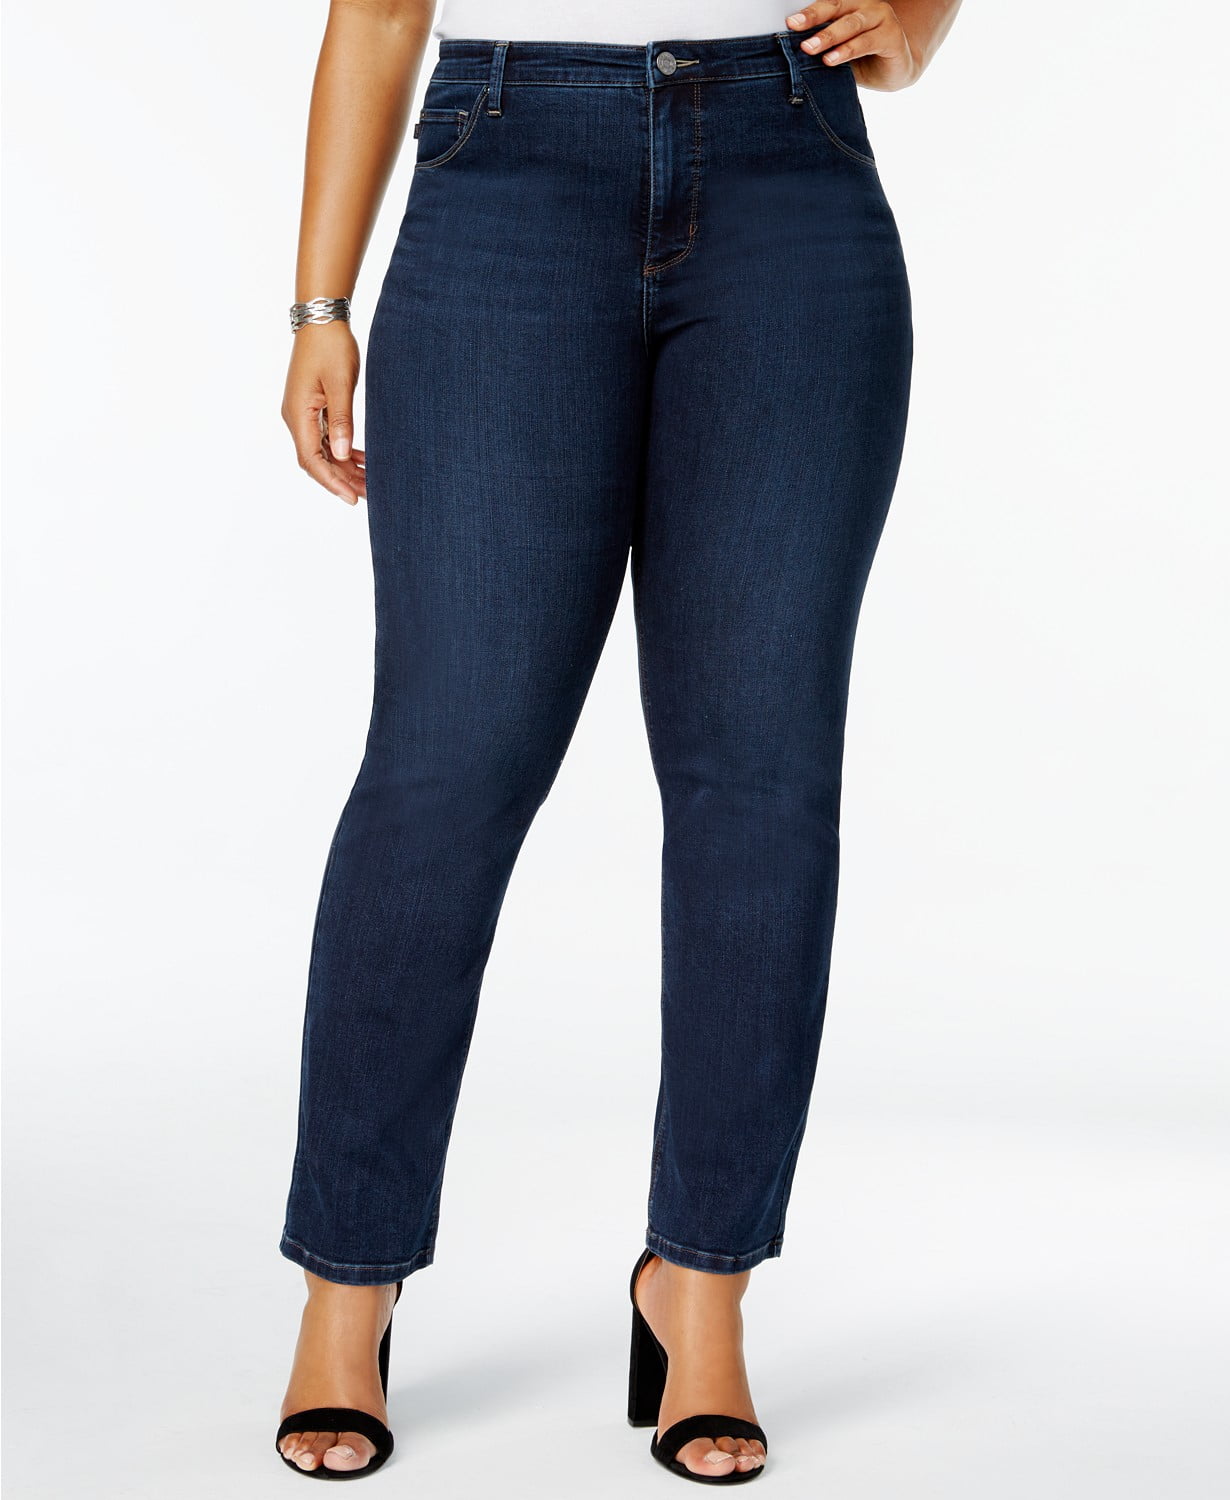 Lee Platinum - Gwen Straight-Fit Jeans - Plus Size - 18W - Walmart.com